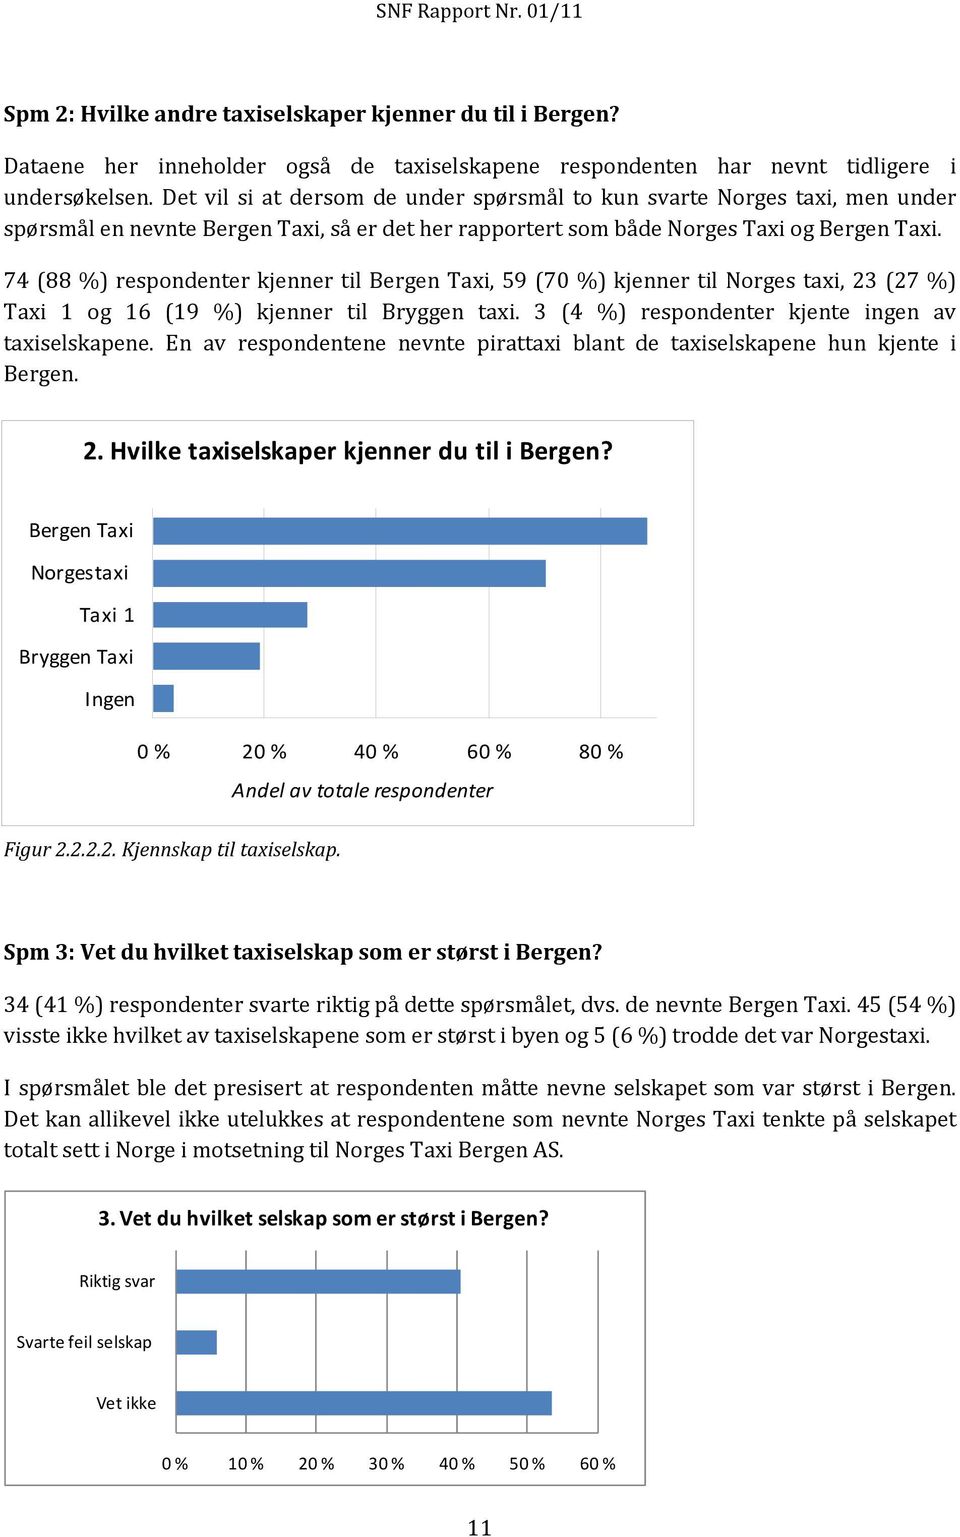 74 (88 %) respondenter kjenner til Bergen Taxi, 59 (70 %) kjenner til Norges taxi, 23 (27 %) Taxi 1 og 16 (19 %) kjenner til Bryggen taxi. 3 (4 %) respondenter kjente ingen av taxiselskapene.